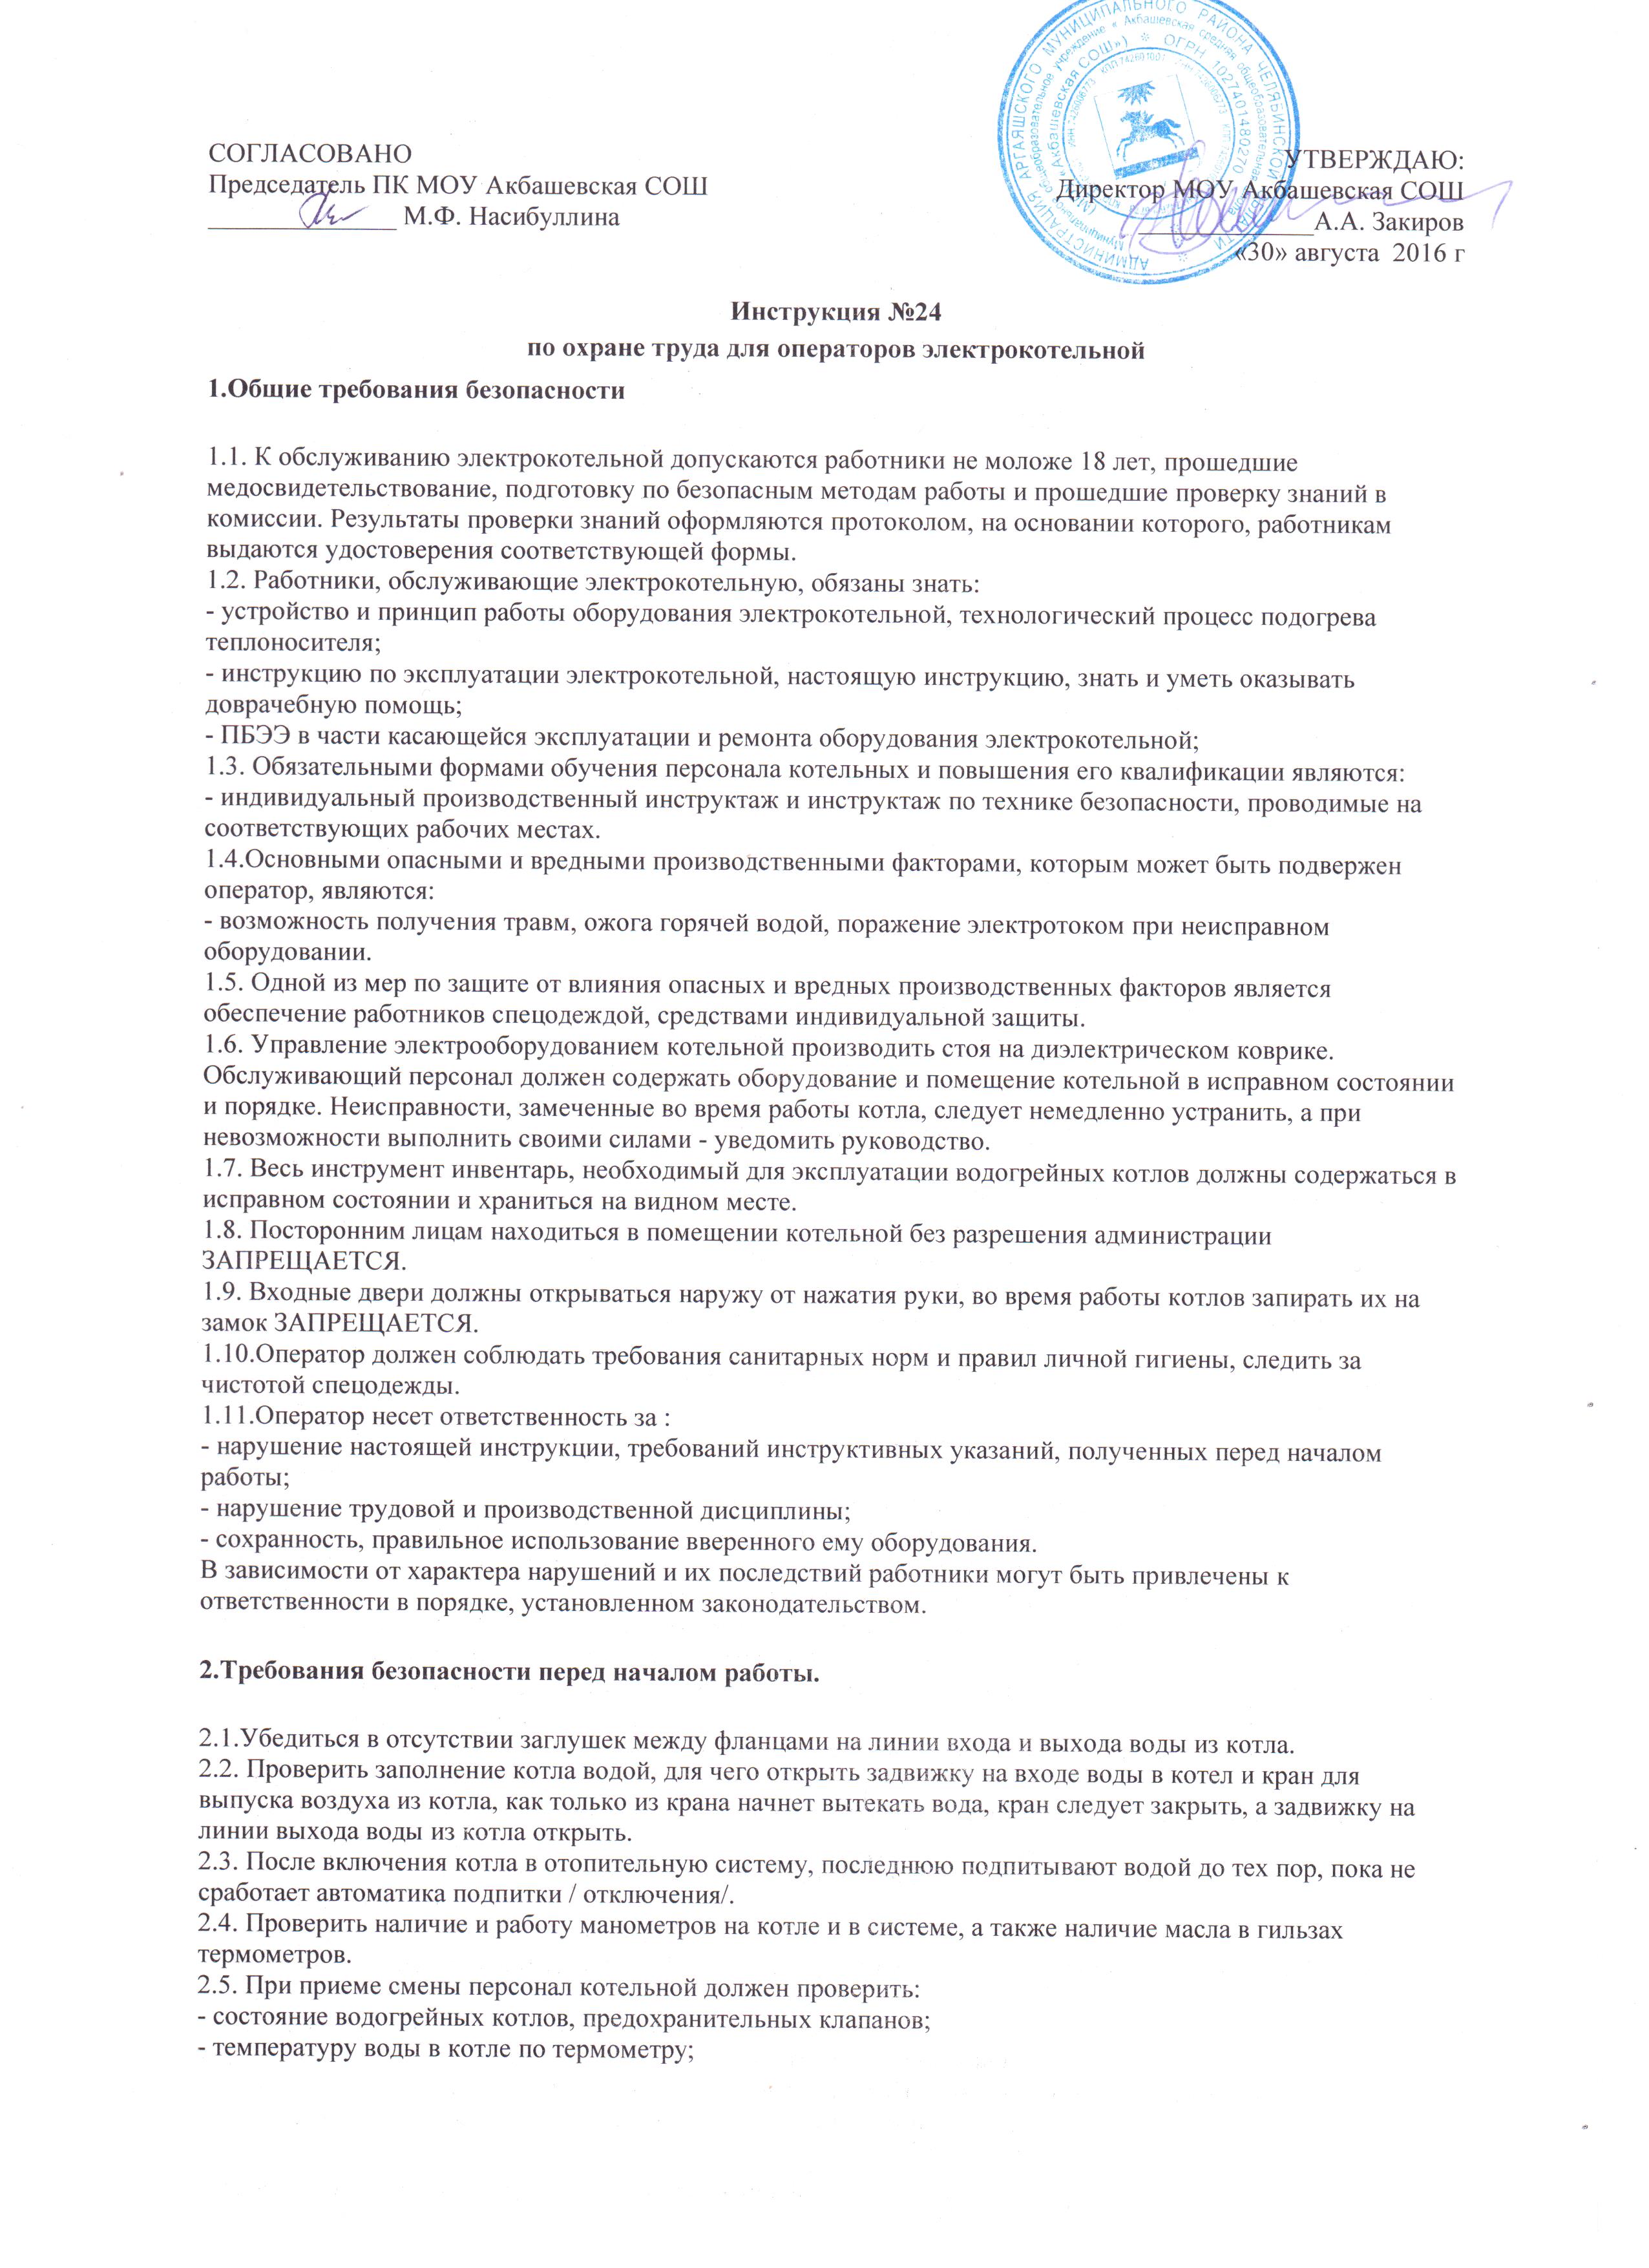 Инструкция по охране труда учителя русского языка и литературы